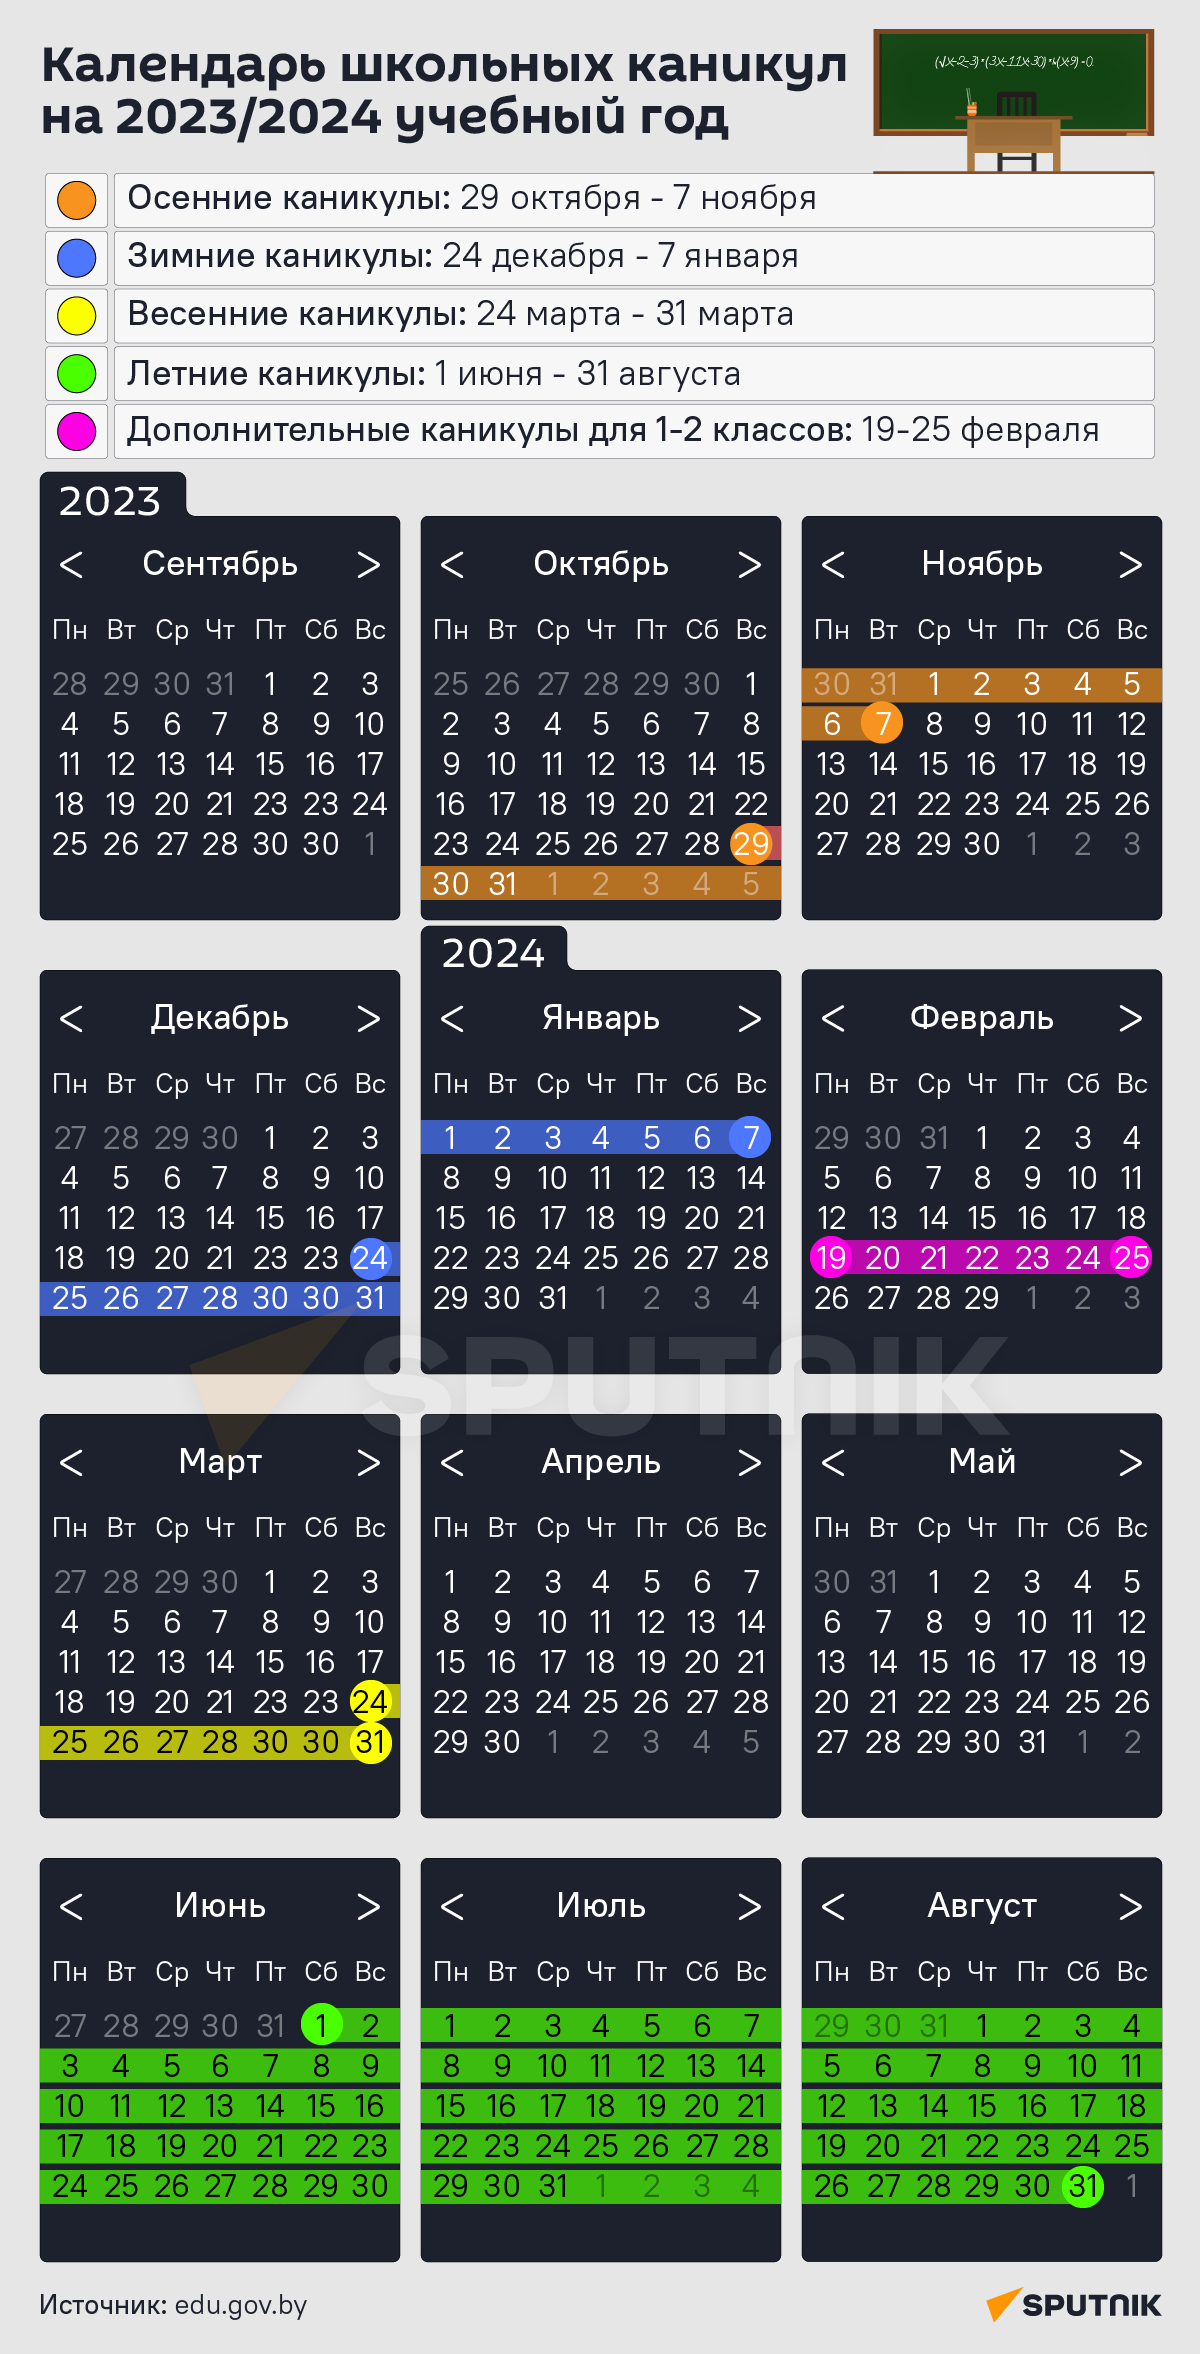 Календарь школьных каникул на 2023/2024 учебный год – инфографика - Sputnik Беларусь